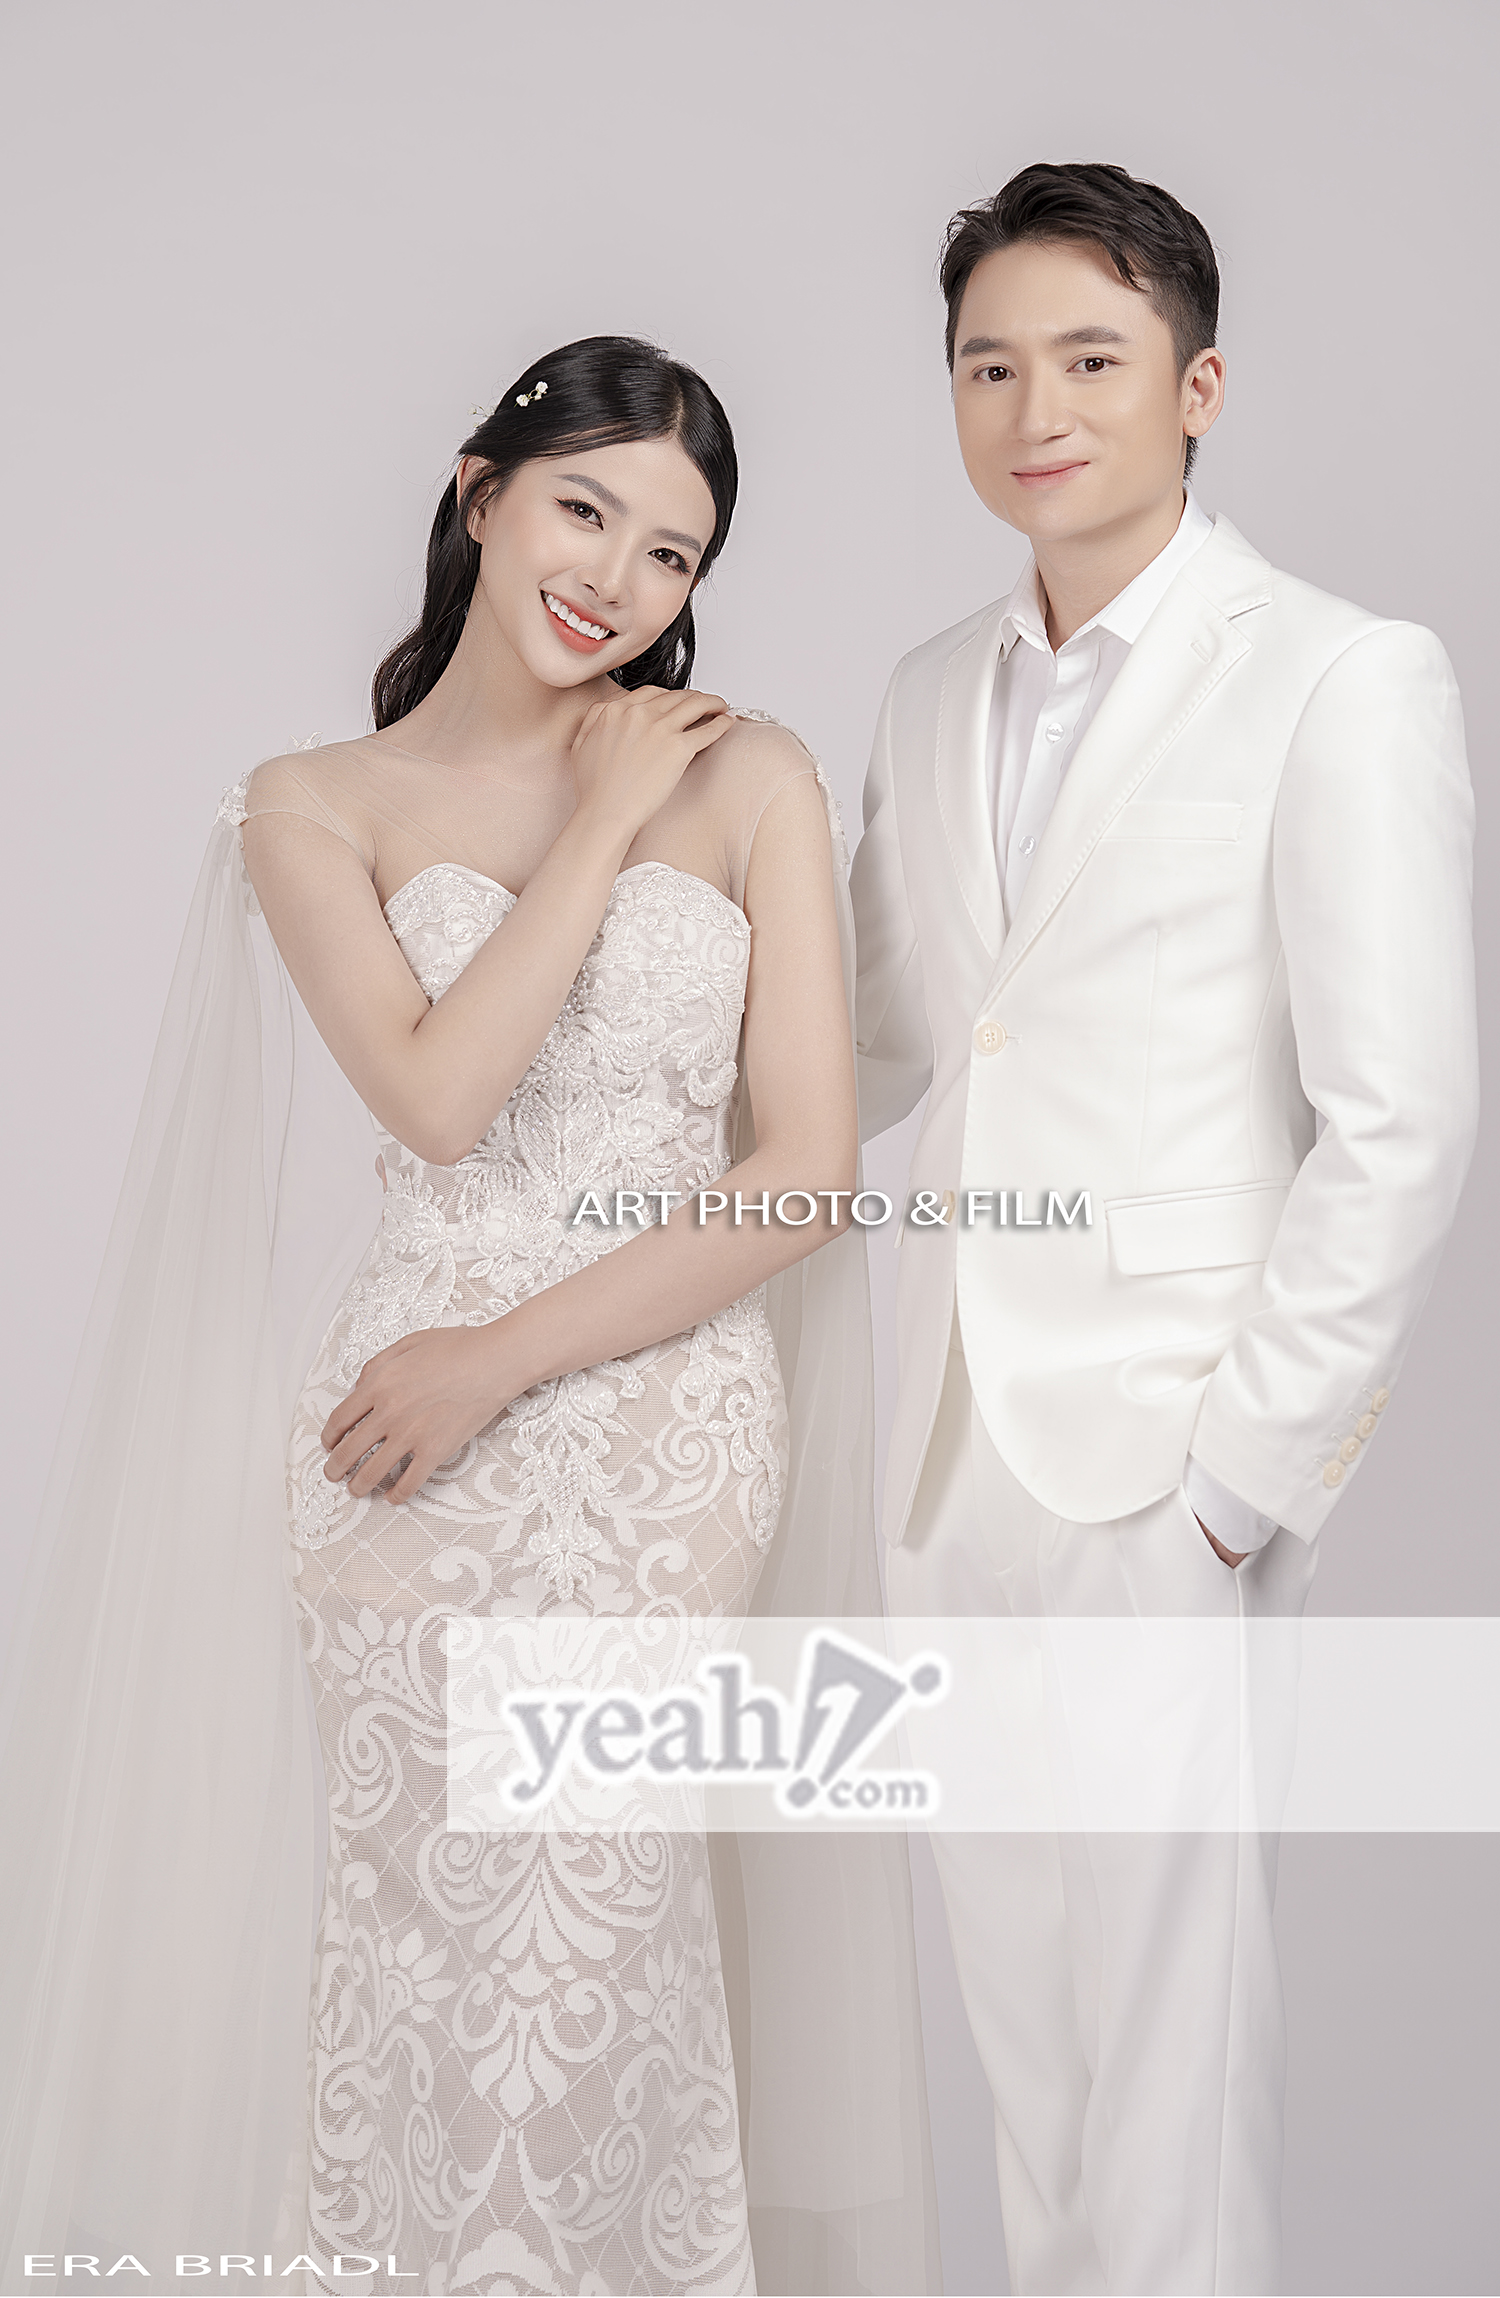 Phan Mạnh Quỳnh và bà xã Khánh Vy trong bộ ảnh cưới theo phong cách tối giản